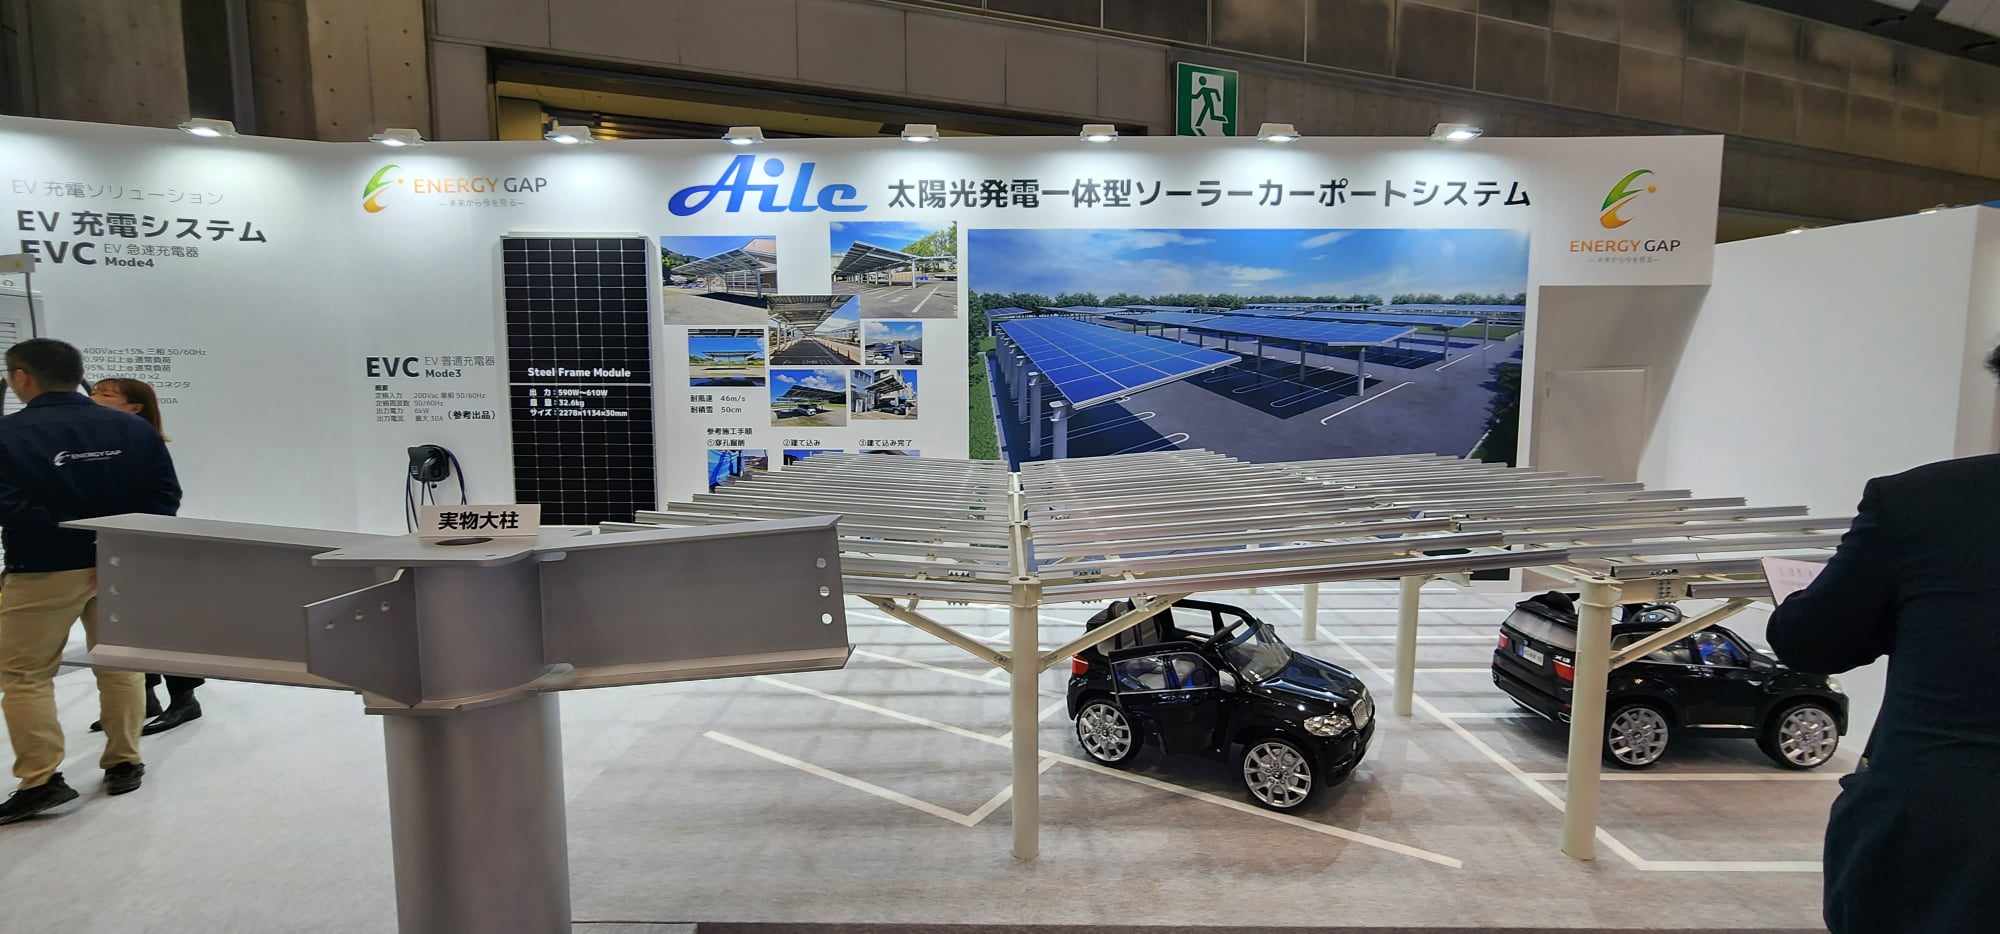 圖5、日本Energy Gap公司呈現太陽能車棚之Aile系列產品